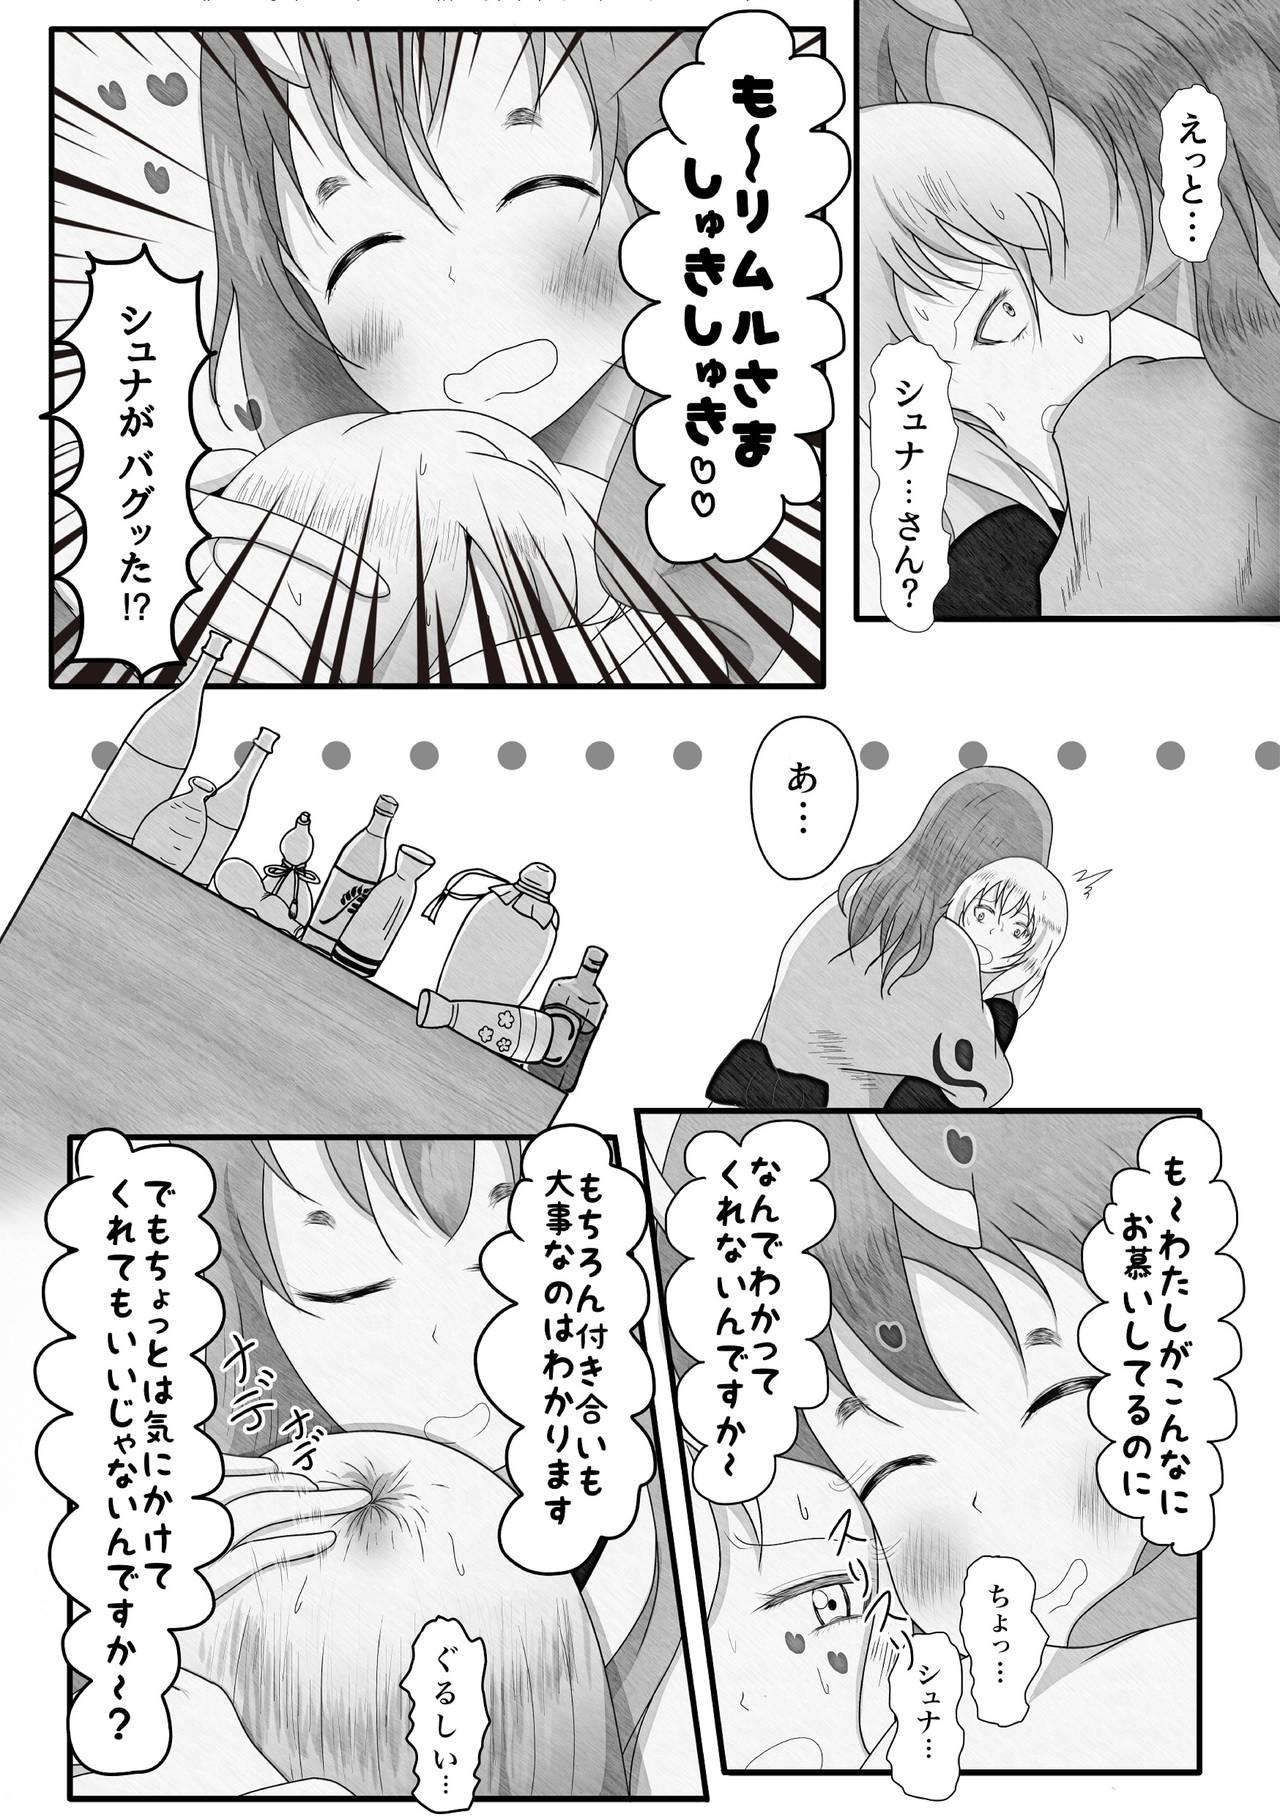 Trannies Yappari Ouga ni wa Kanawanai - Tensei shitara slime datta ken Magrinha - Page 5